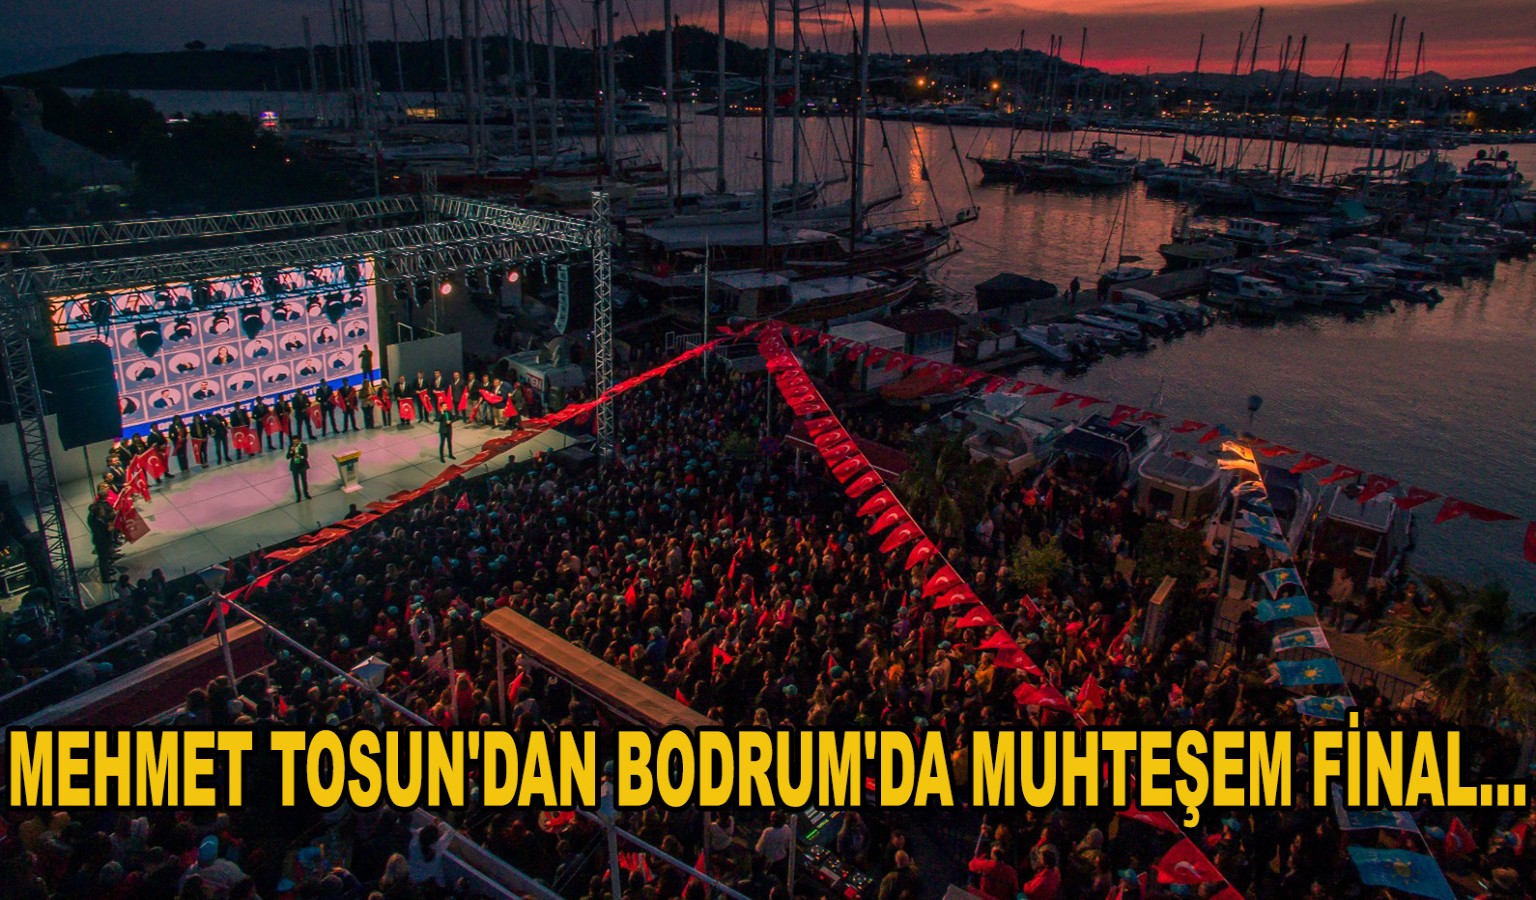 MEHMET TOSUN'DAN BODRUM'DA MUHTEŞEM FİNAL...